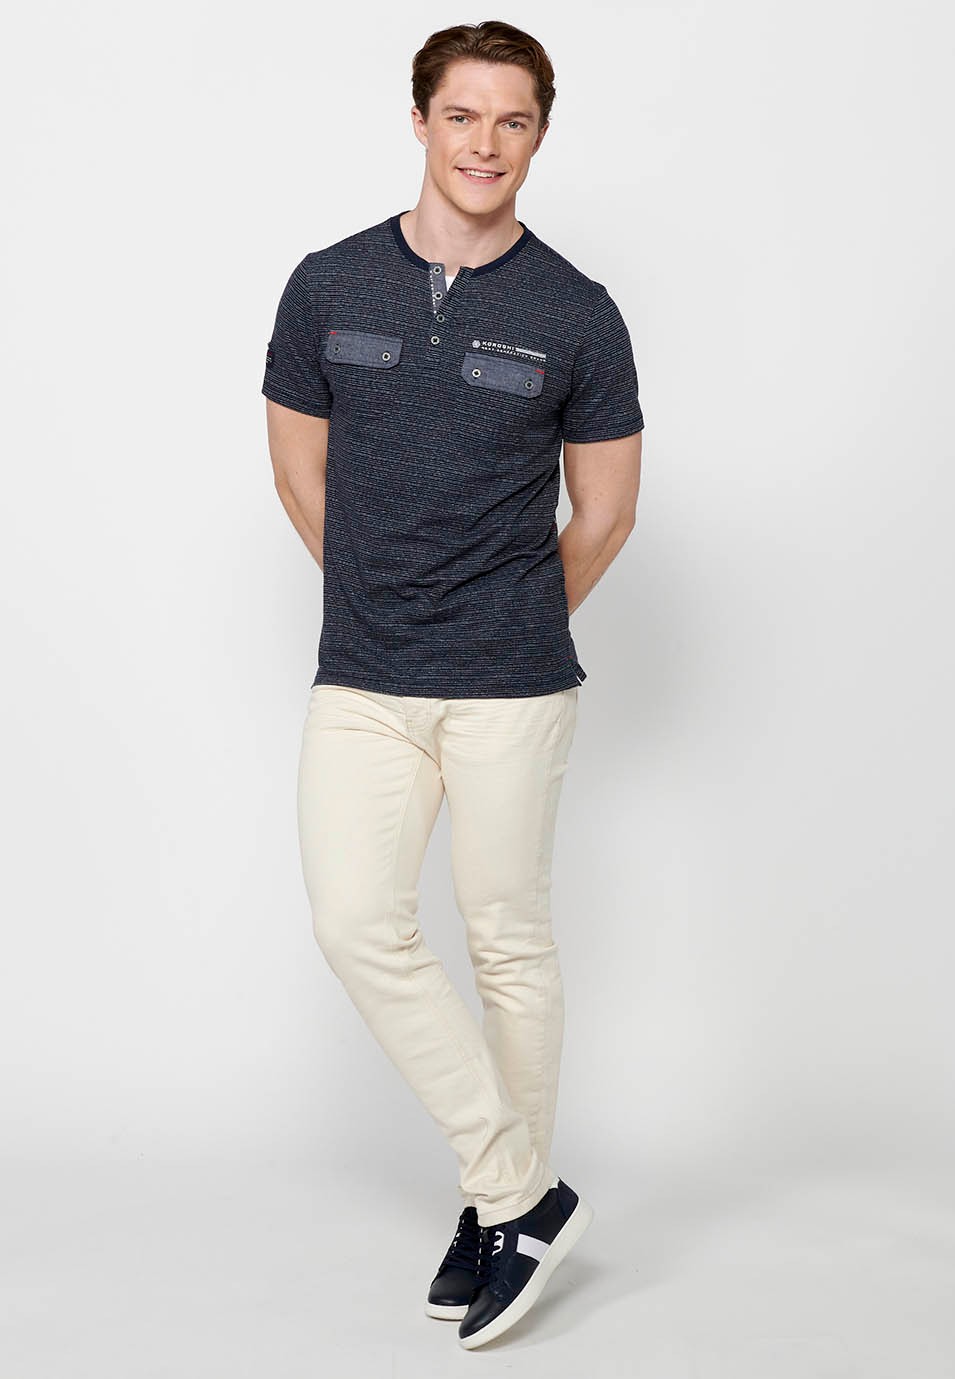 T-shirt col manches courtes avec ouverture boutonnée, coloris marine pour homme